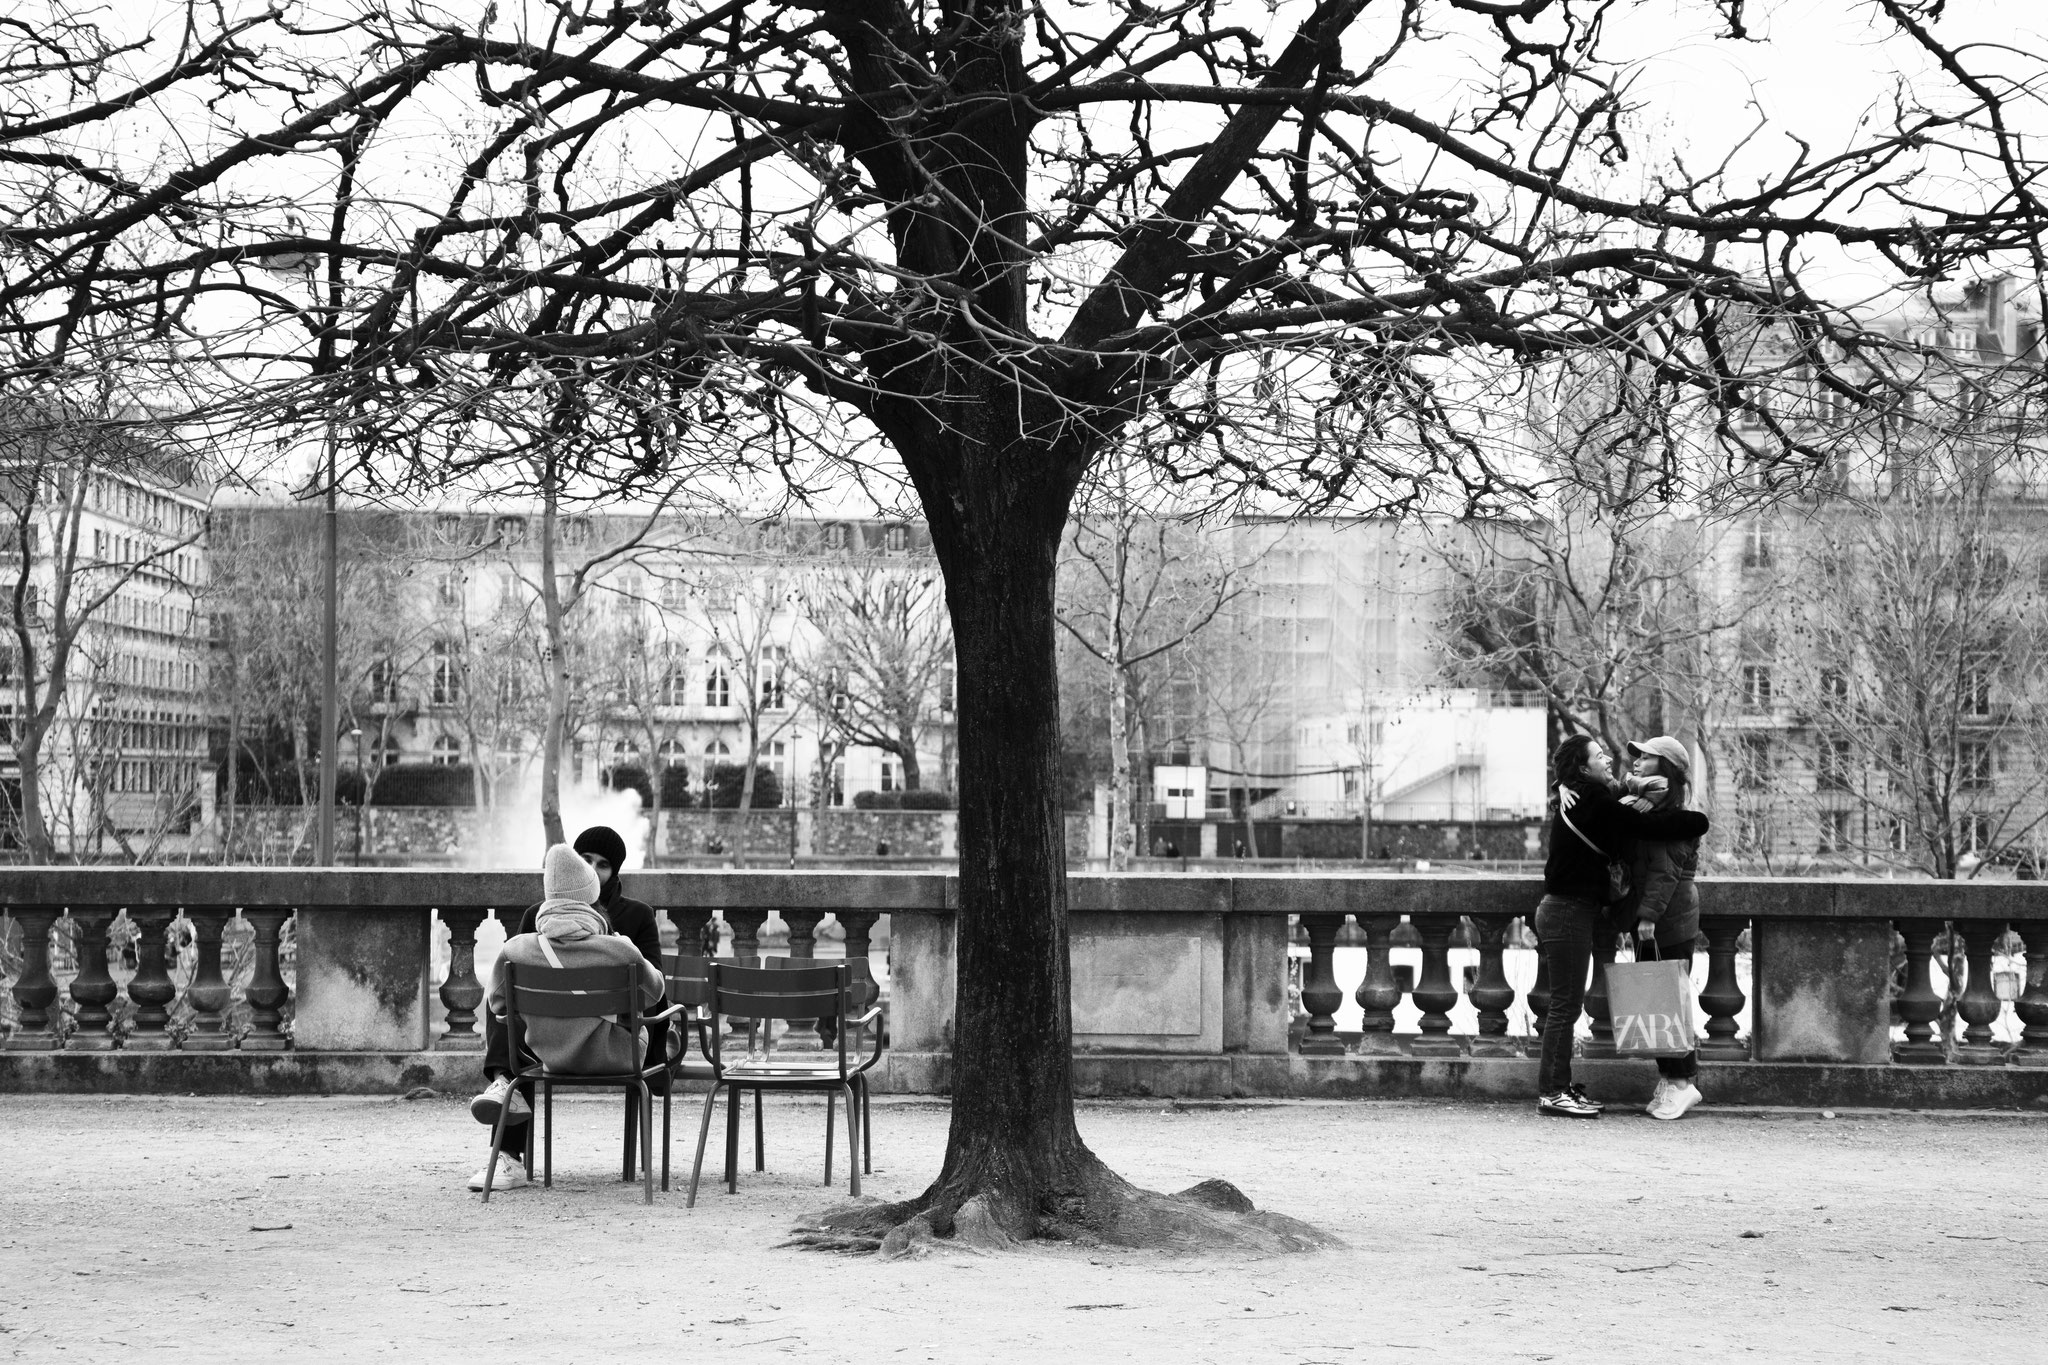 "The link tree" - Jardin des Tuileries, Paris (2023). © Clémence Rougetet